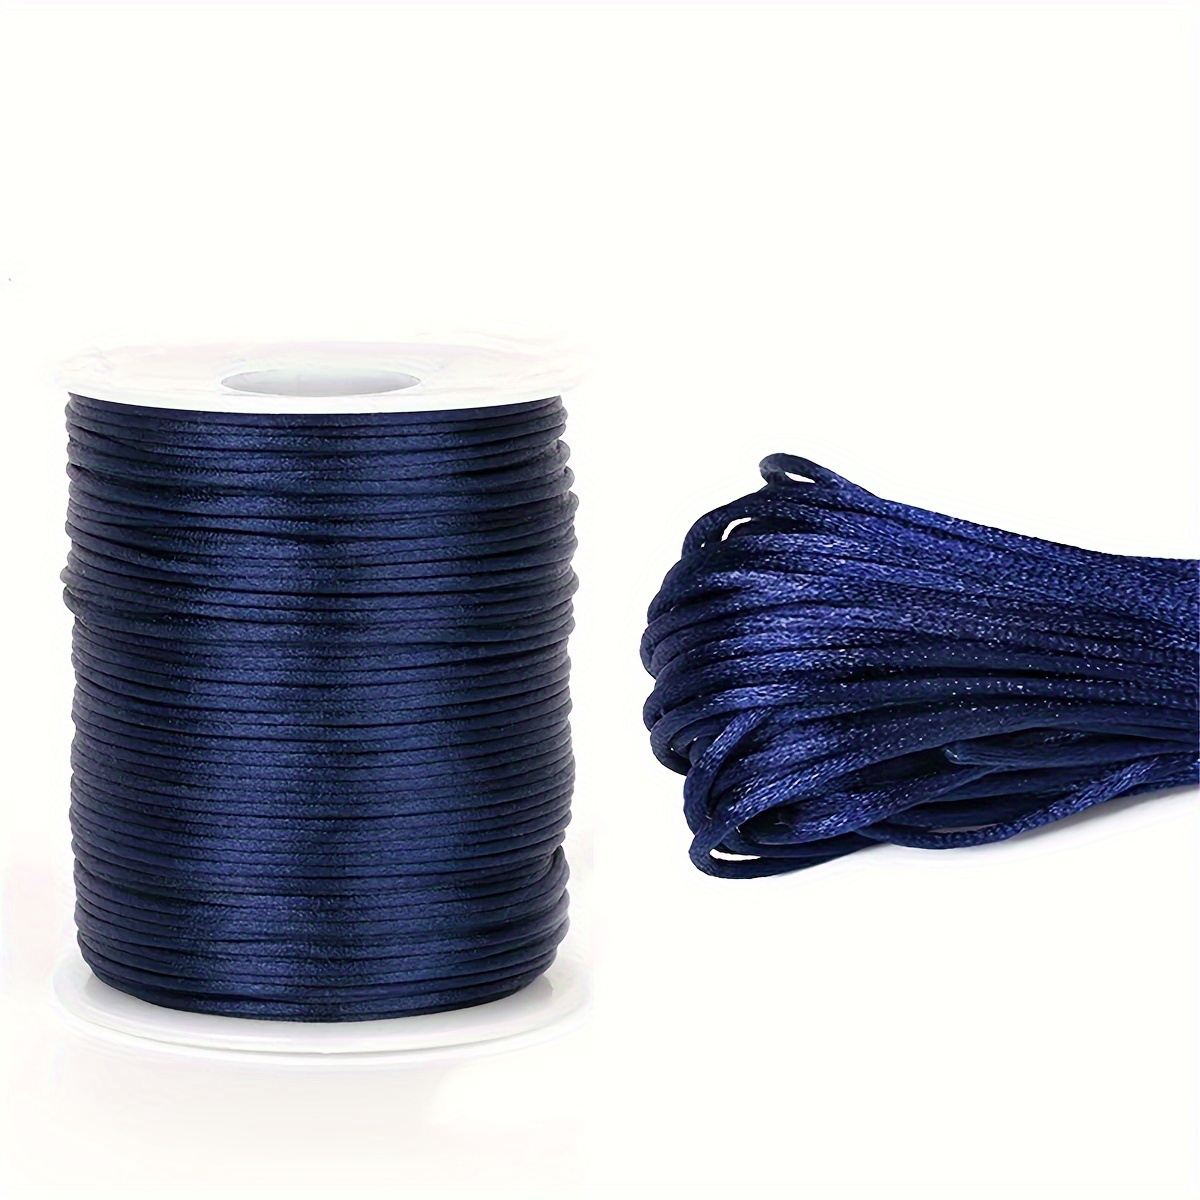 18 Colors Chinese Knotting Cord 1.5mm Nylon Shamballa Macrame Cord